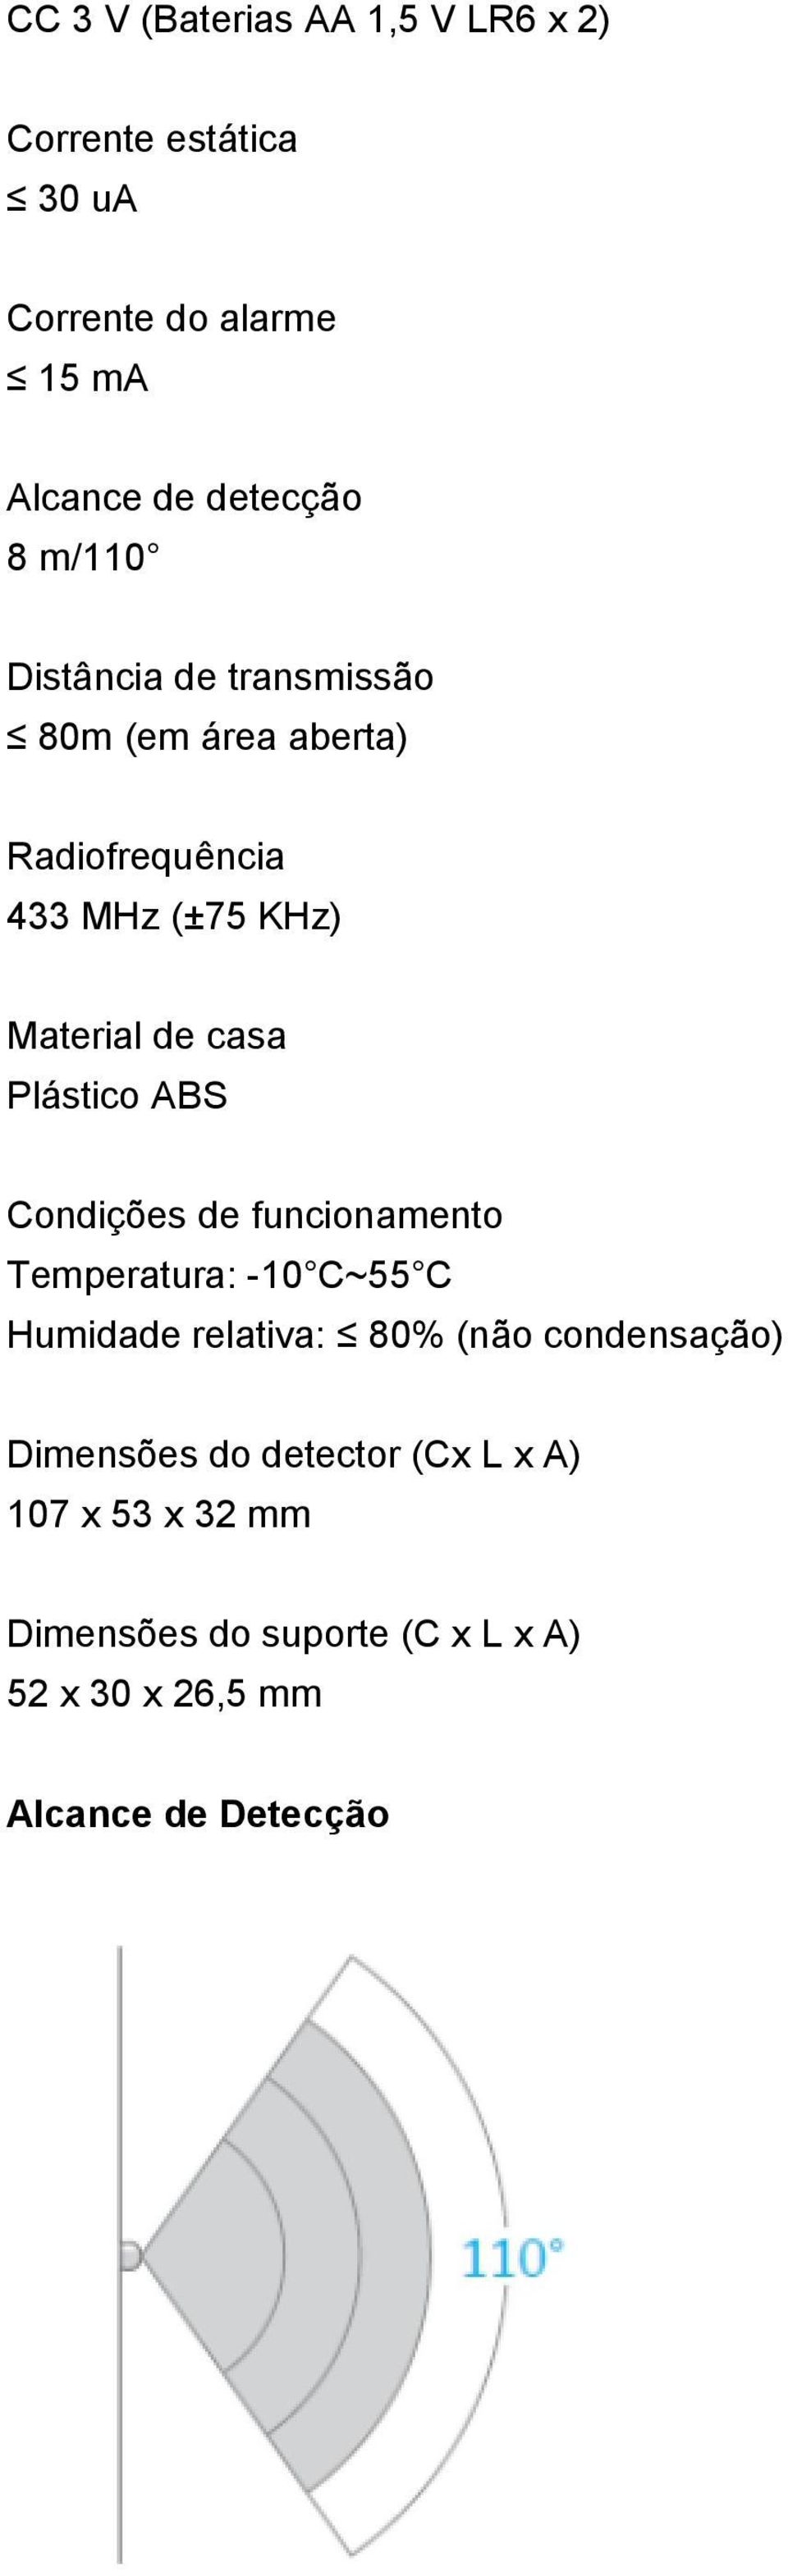 Plástico ABS Condições de funcionamento Temperatura: -10 C~55 C Humidade relativa: 80% (não condensação)